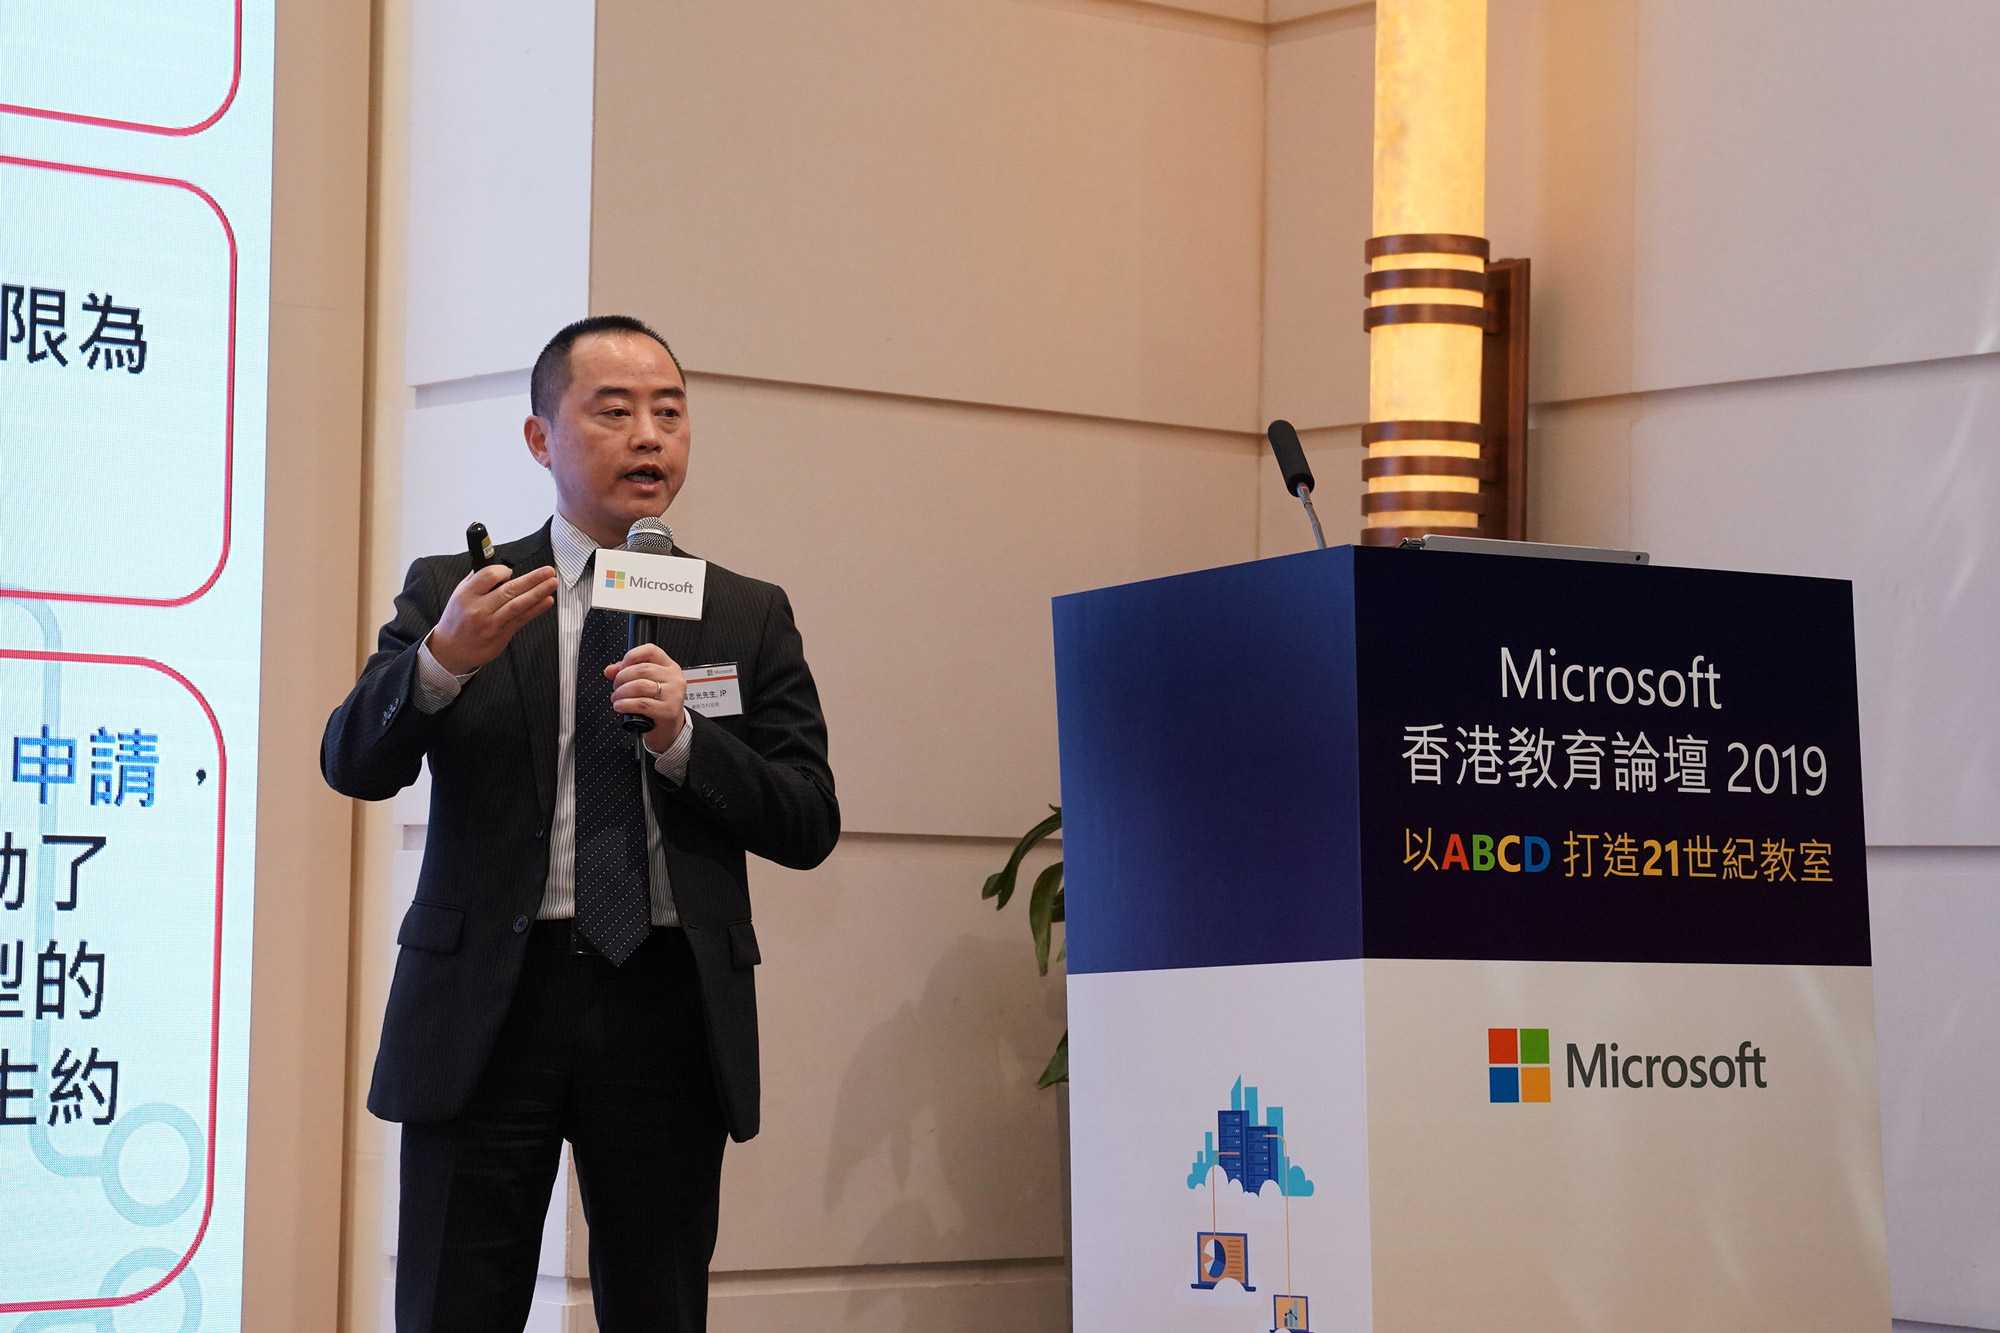 助理政府資訊科技總監（產業發展）黃志光先生於「Microsoft香港教育論壇2019」簡介「中學IT創新實驗室」計劃